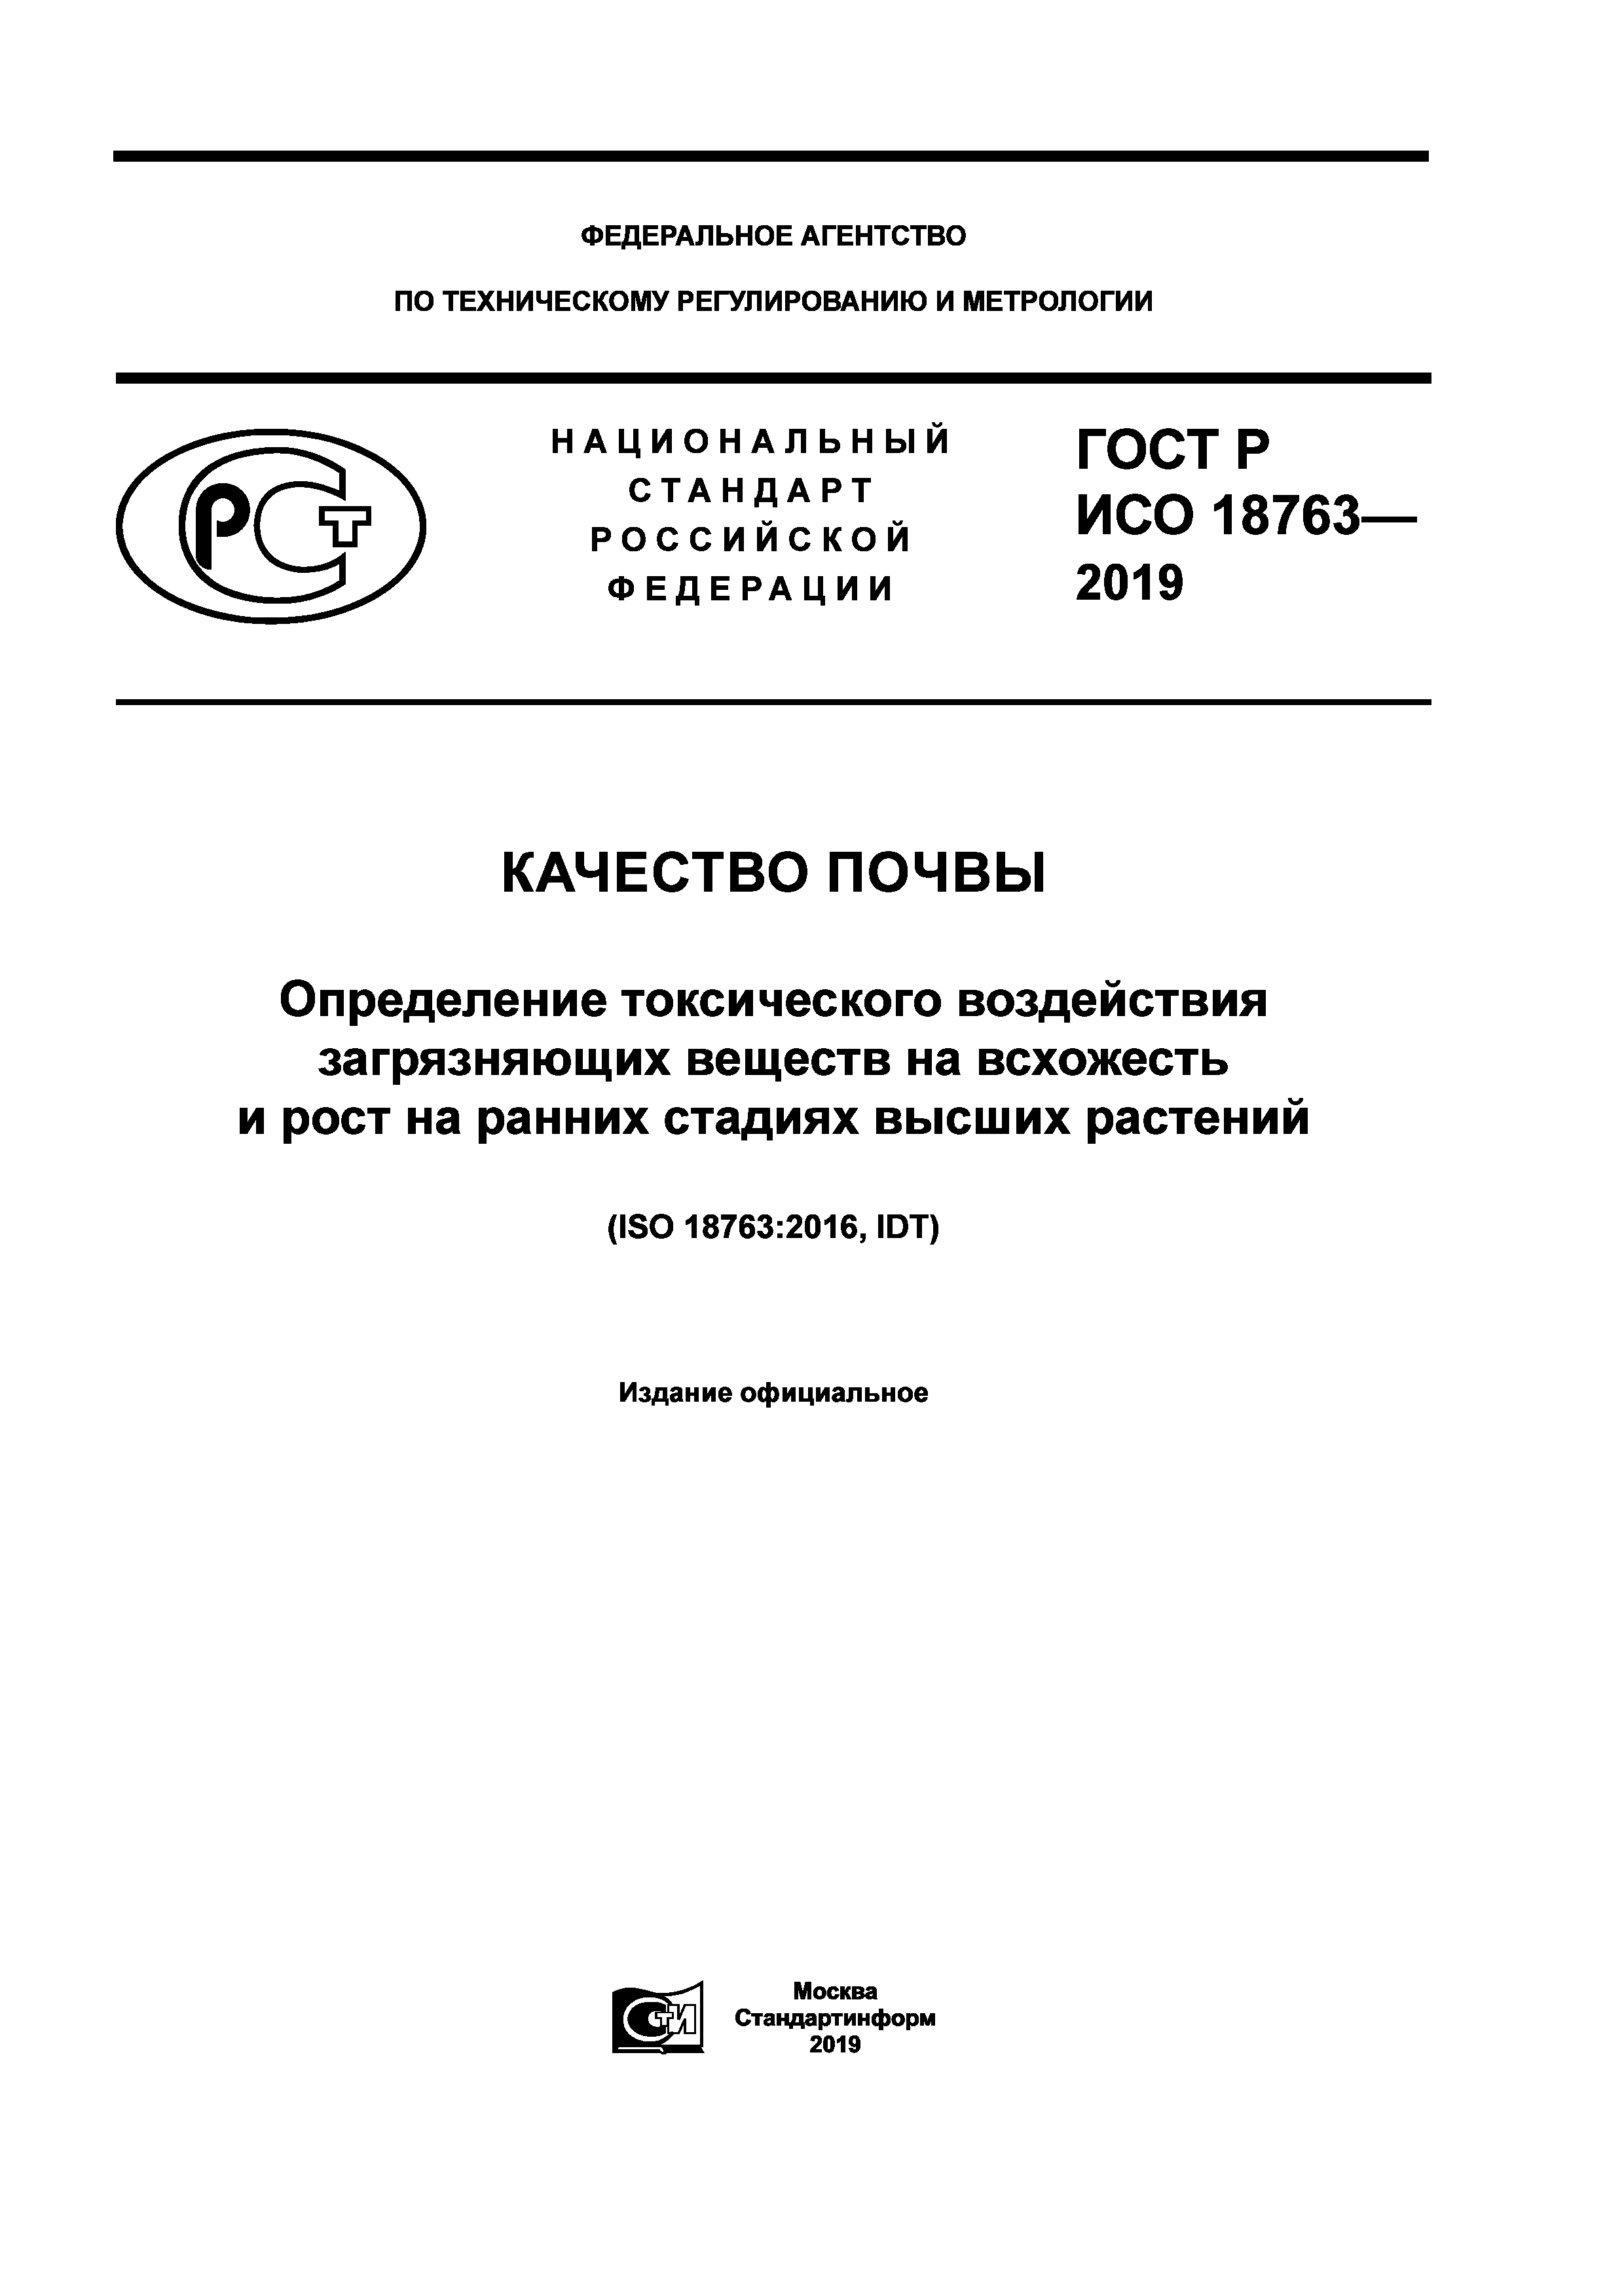 ГОСТ Р ИСО 18763-2019